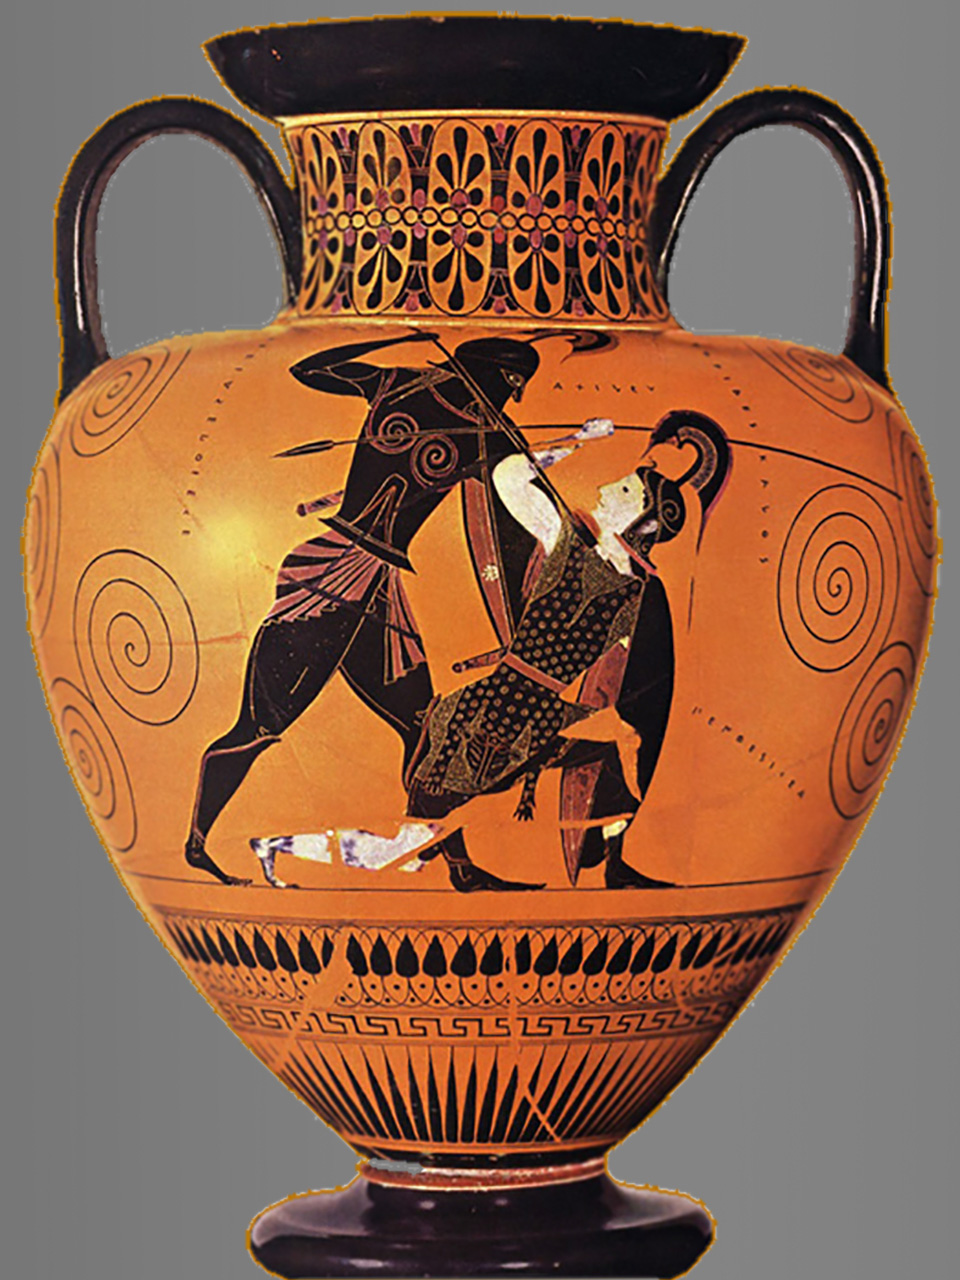 Smeđa antička vaza s crtežom. Crtež prikazuje Ahileja (slijeva) kako ubija trojanskog ratnika (kleči njemu okrenut zdesna).